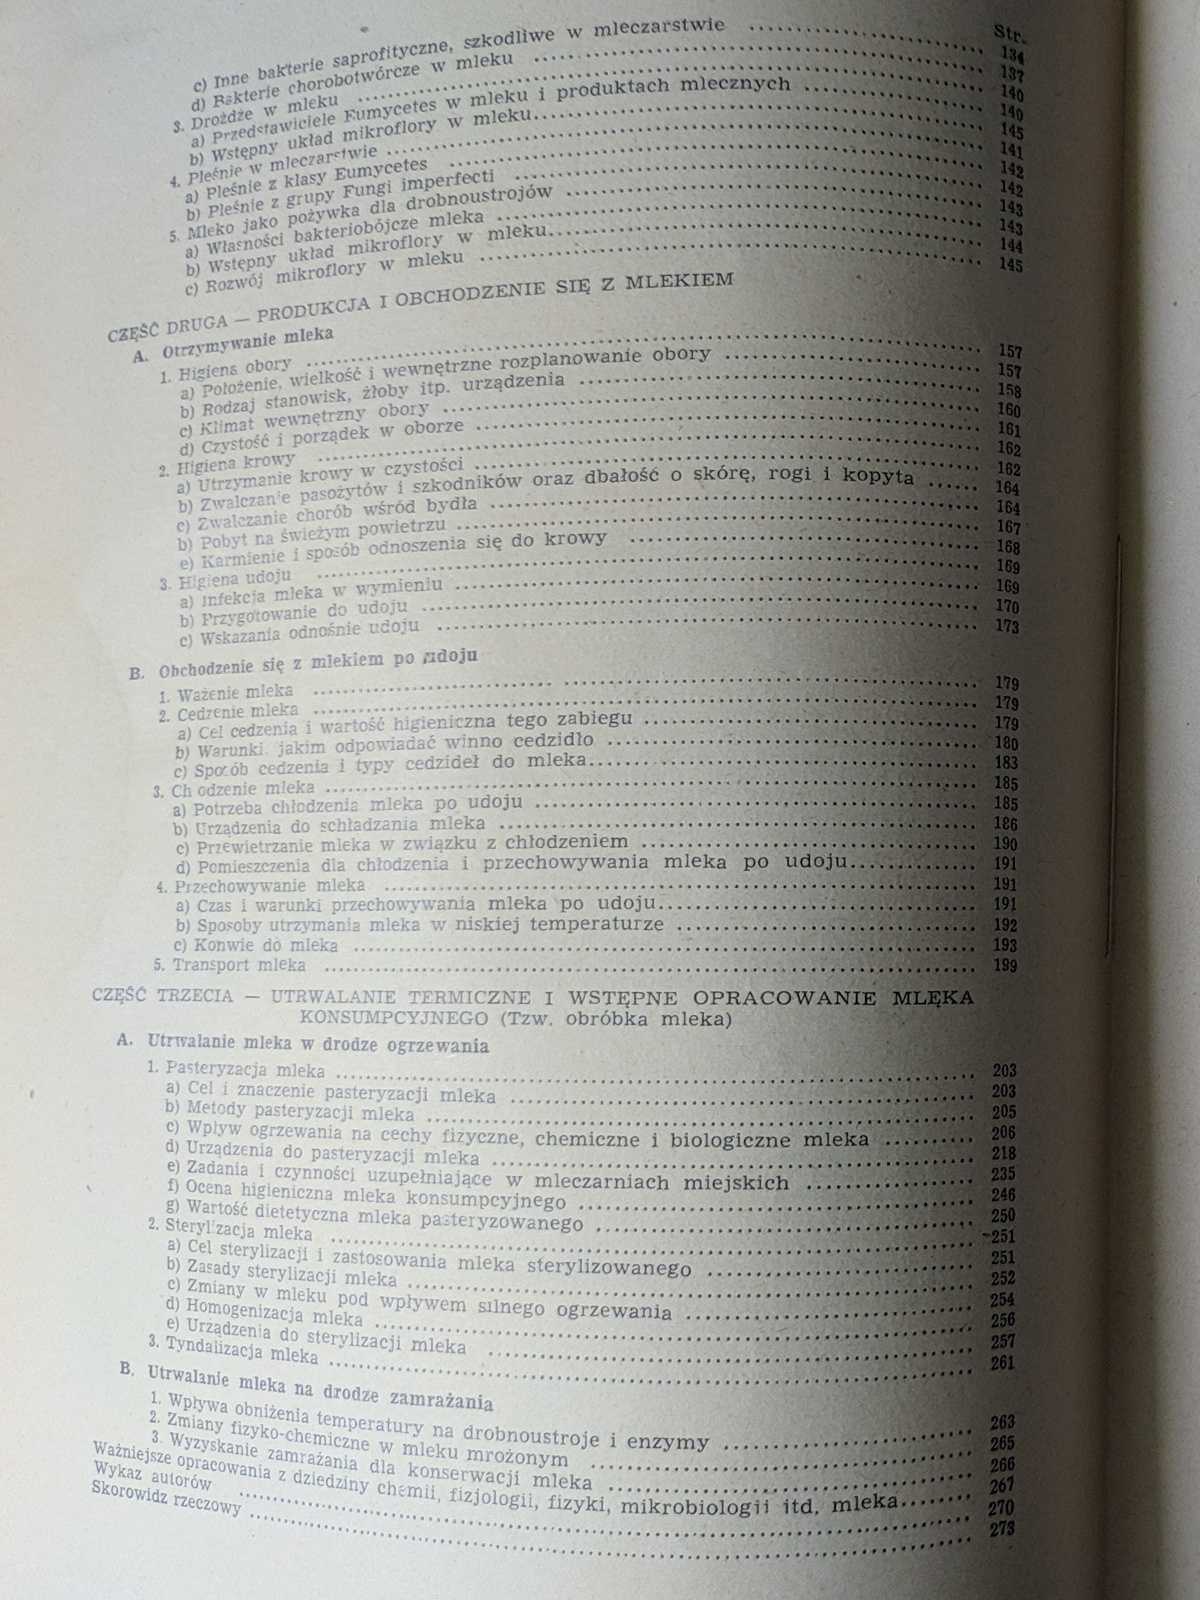 Chemia i higiena mleka E. Pijanowski, książka z 1948 roku